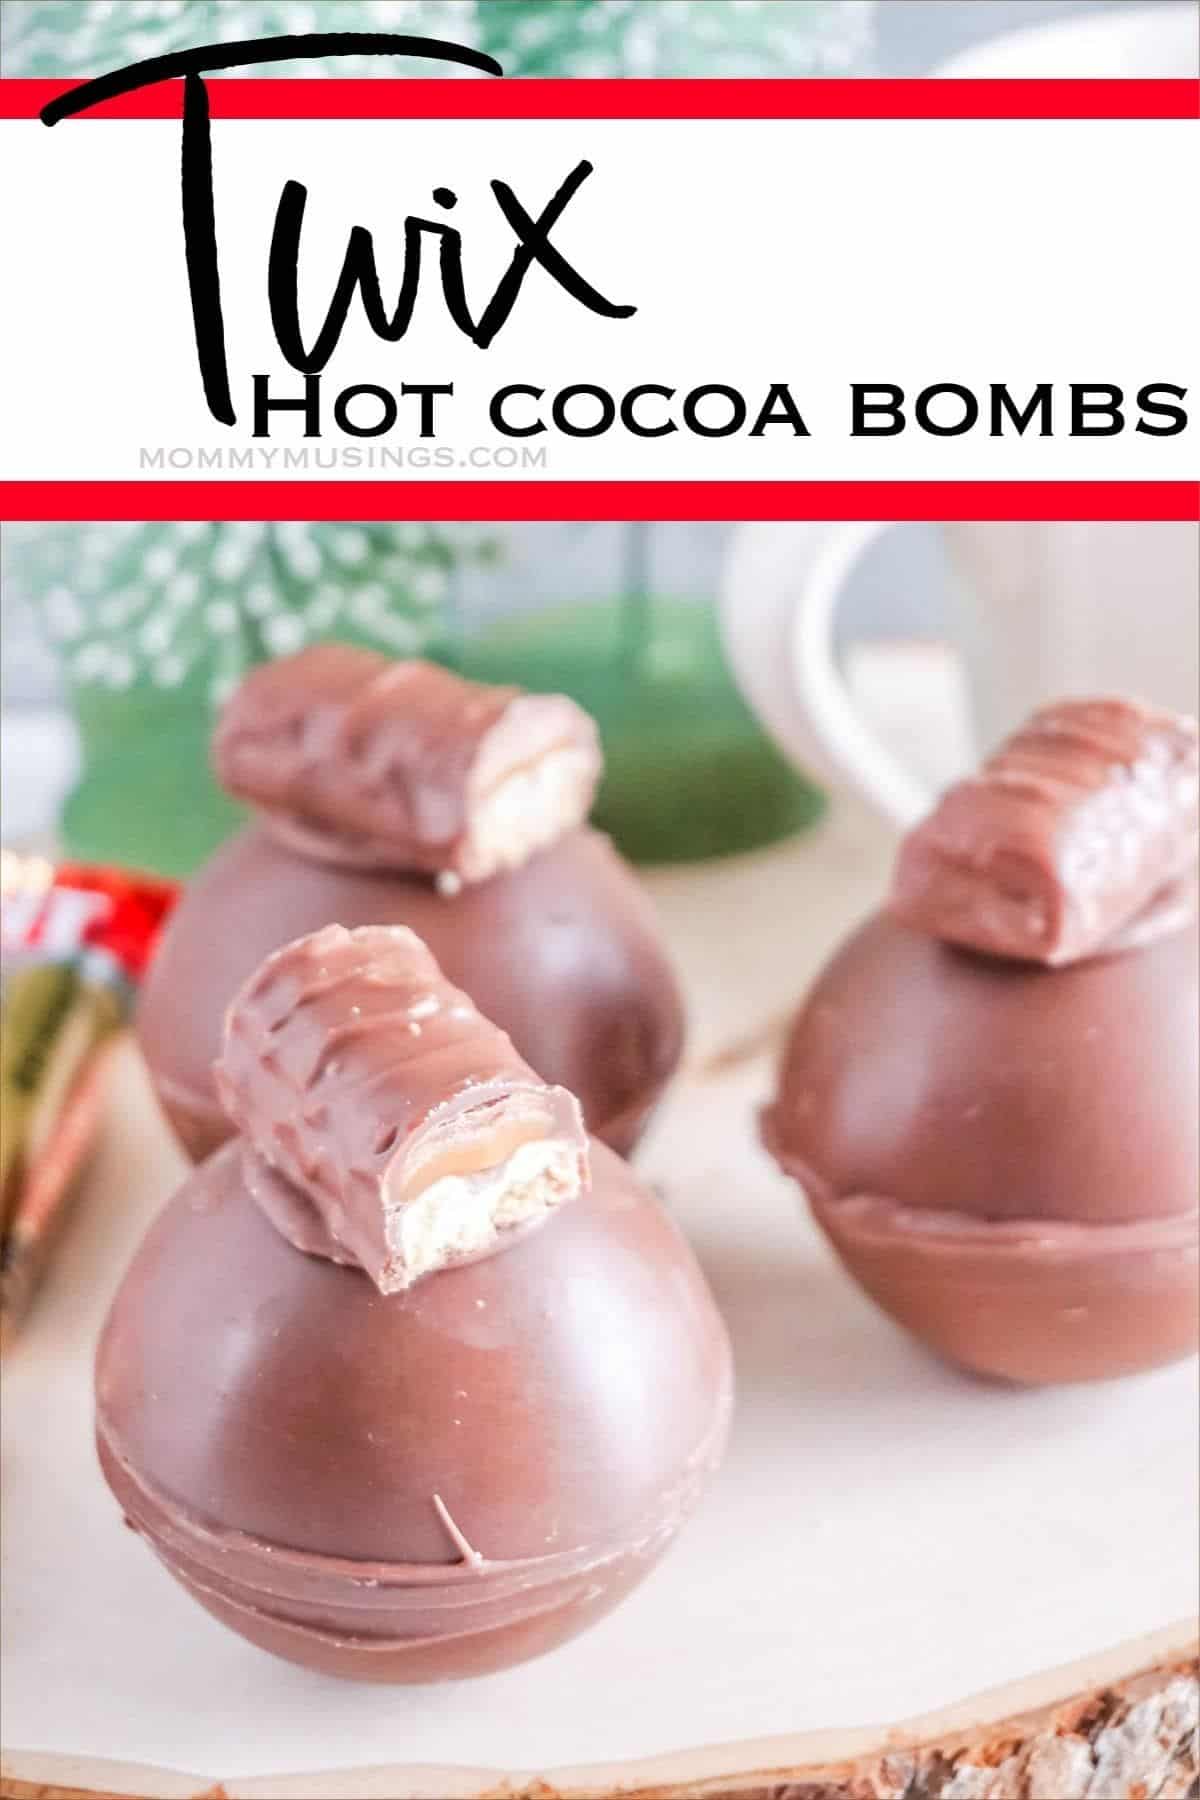 Twix hot cocoa bomb